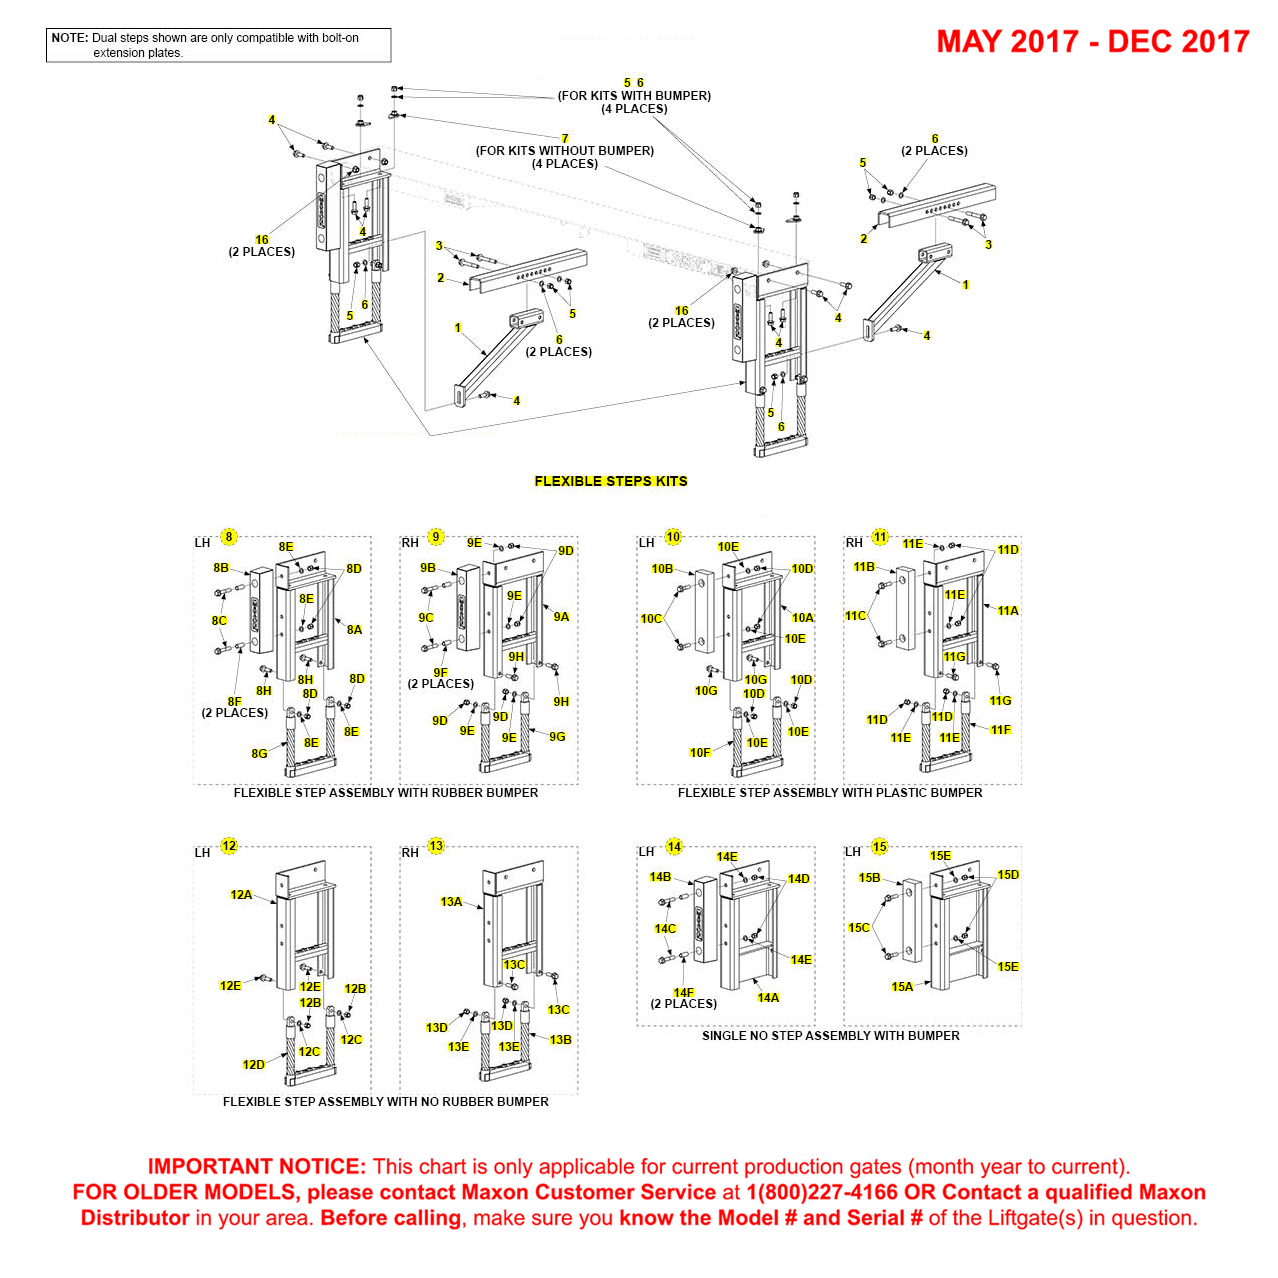 Maxon TE-15 And TE-20 (May 2017 - Dec 2017) Flexible Step Kit Diagram